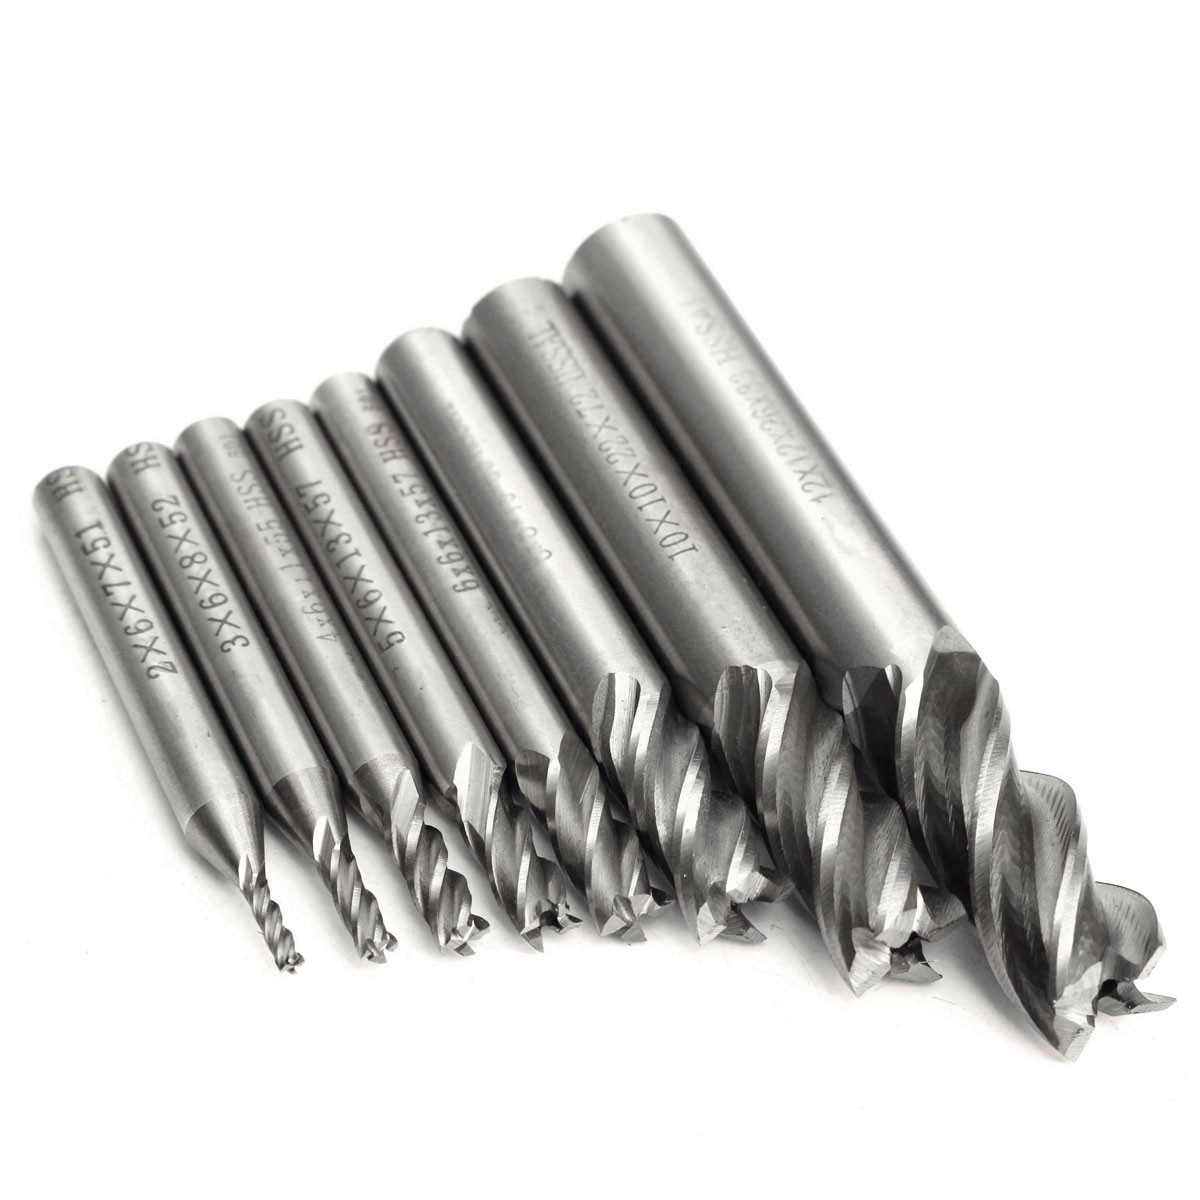 2-12mm-HSS-4-Flute-End-Mill-Cutter-Straight-Shank-Milling-Cutter-Drill-Bit-CNC-Tool-1116645-10